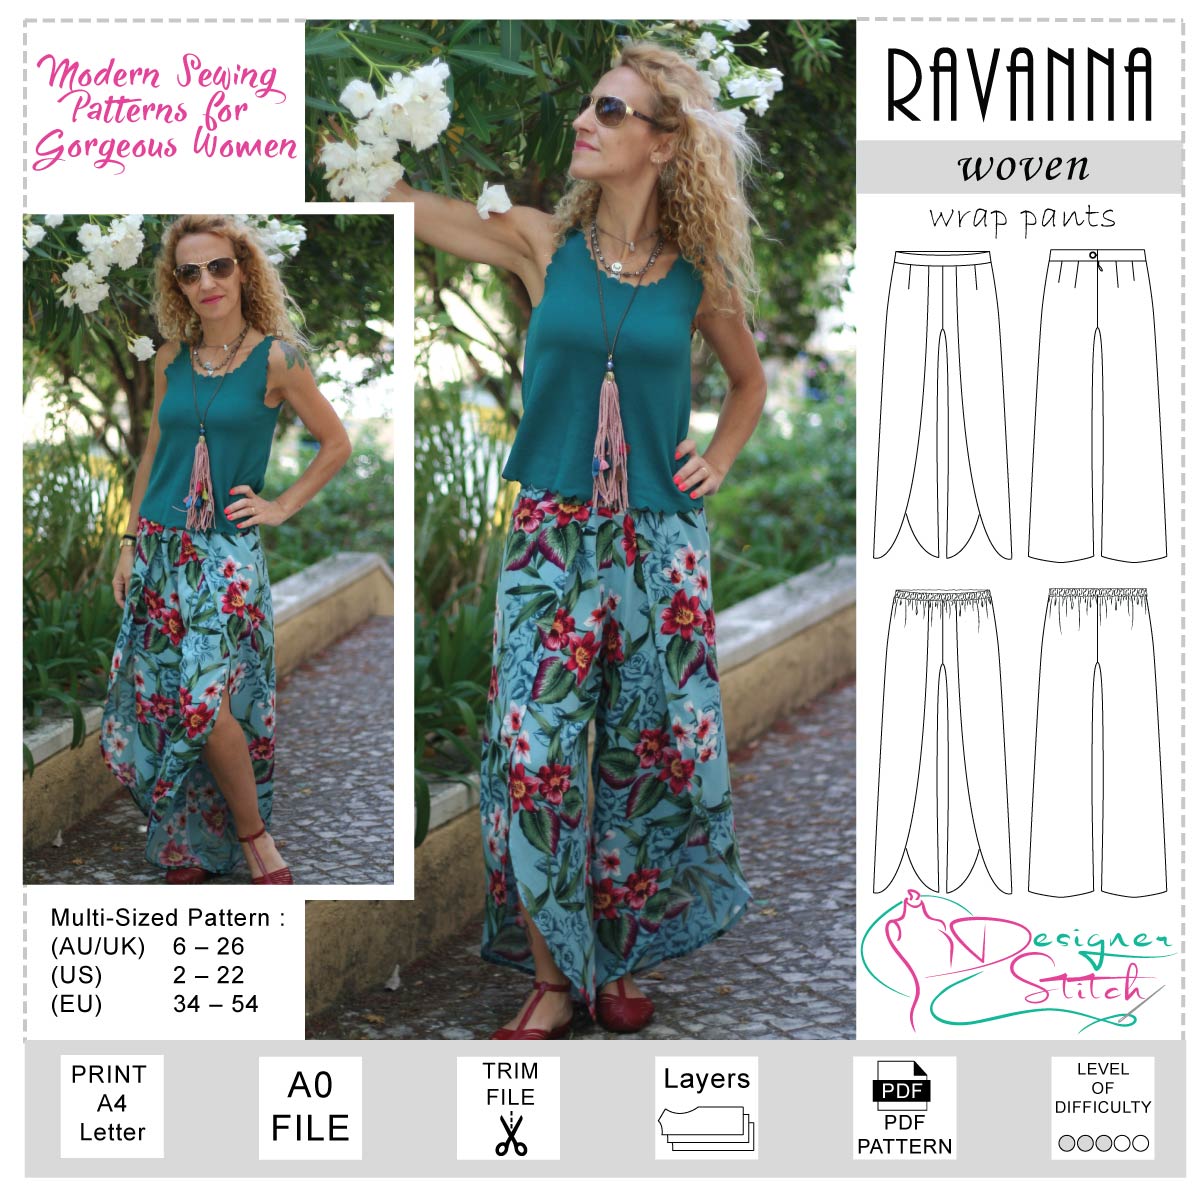 Ravanna Wrap Pants Sewing Pattern (PDF)